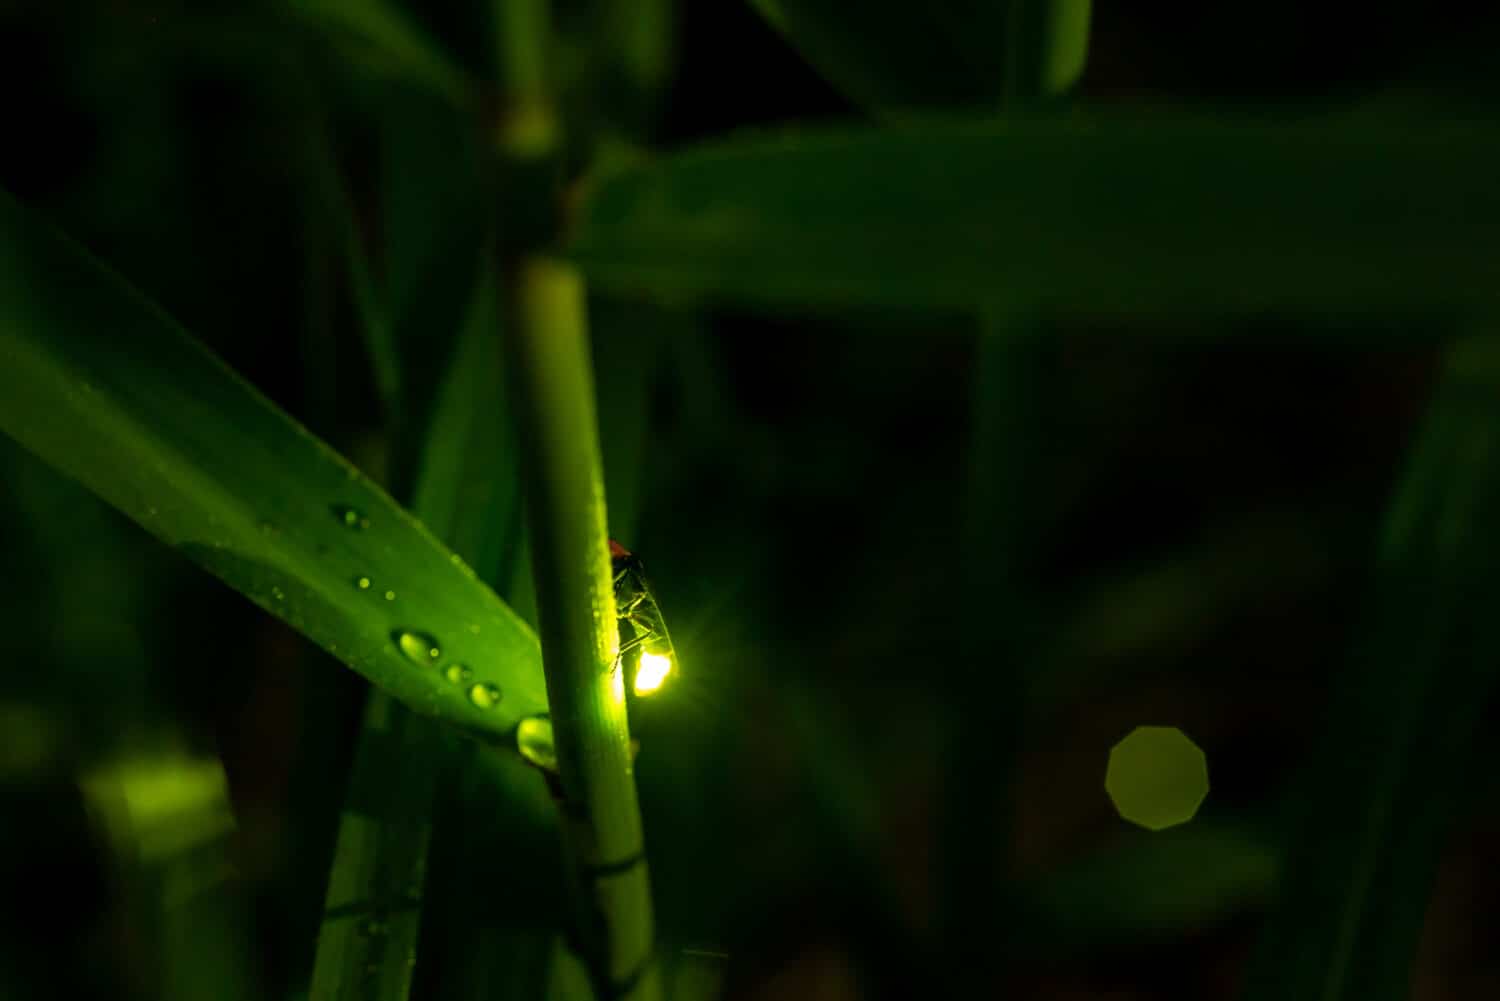 Night firefly light macro exposure